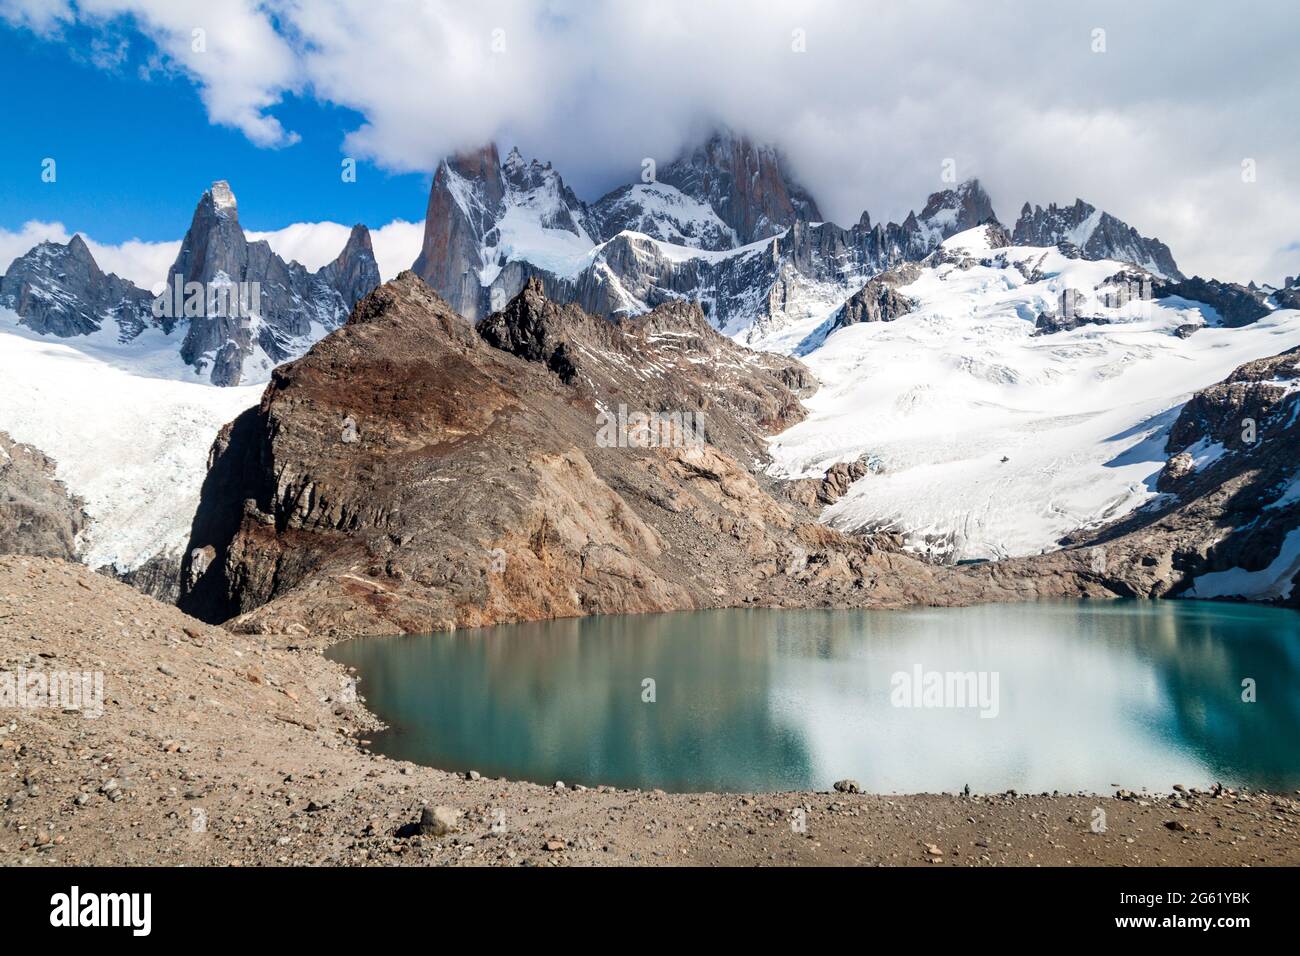 Laguna de los Tres in National Park Los Glaciares, Argentina Stock Photo